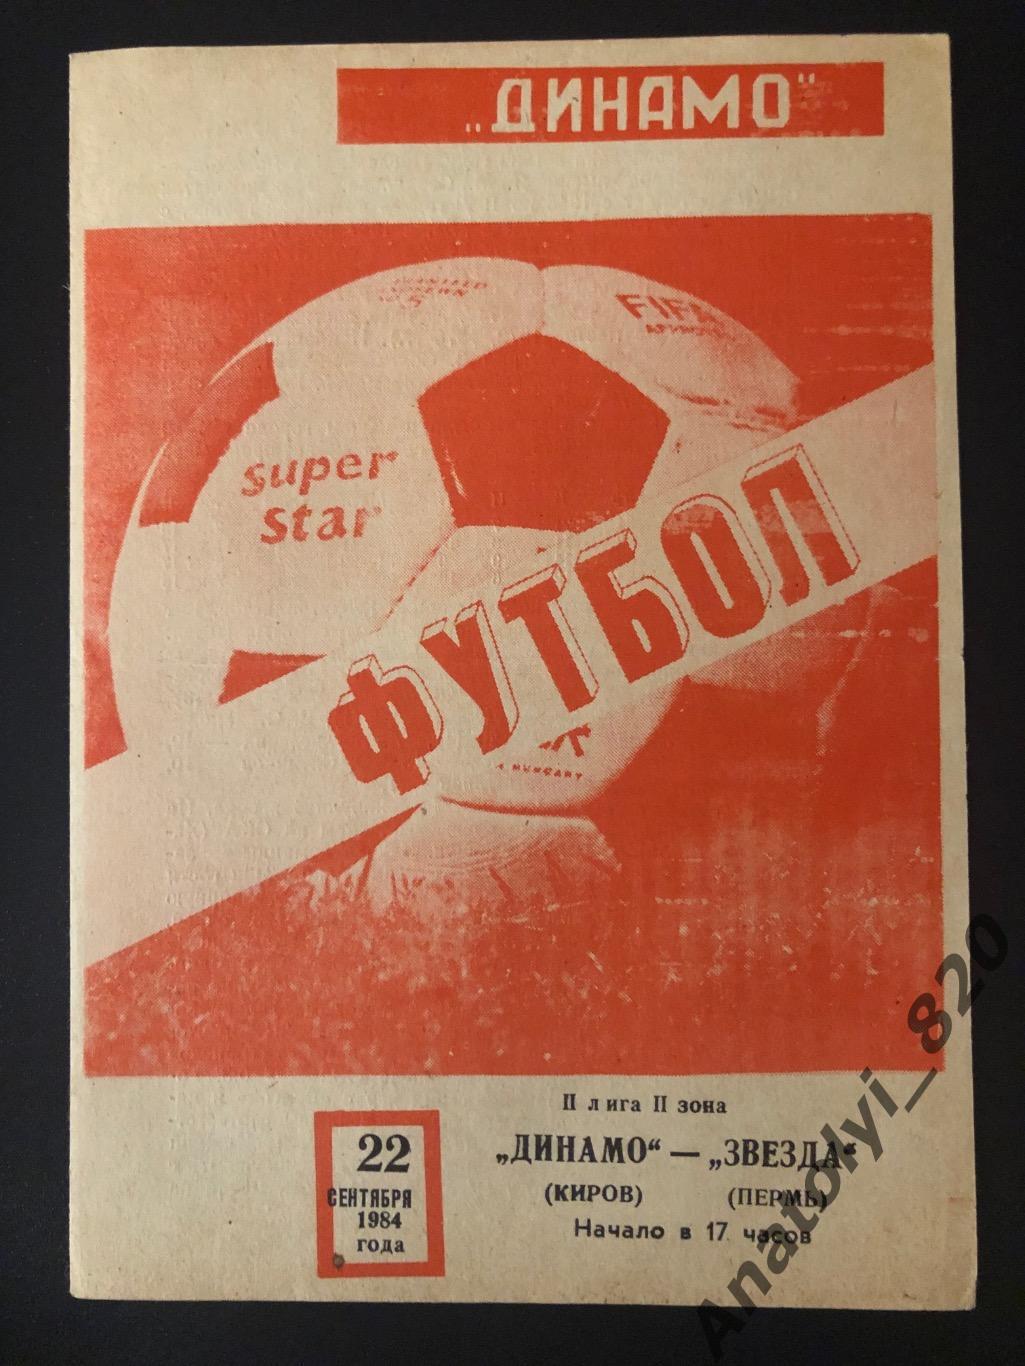 Динамо Киров - Звезда Пермь 1984 год